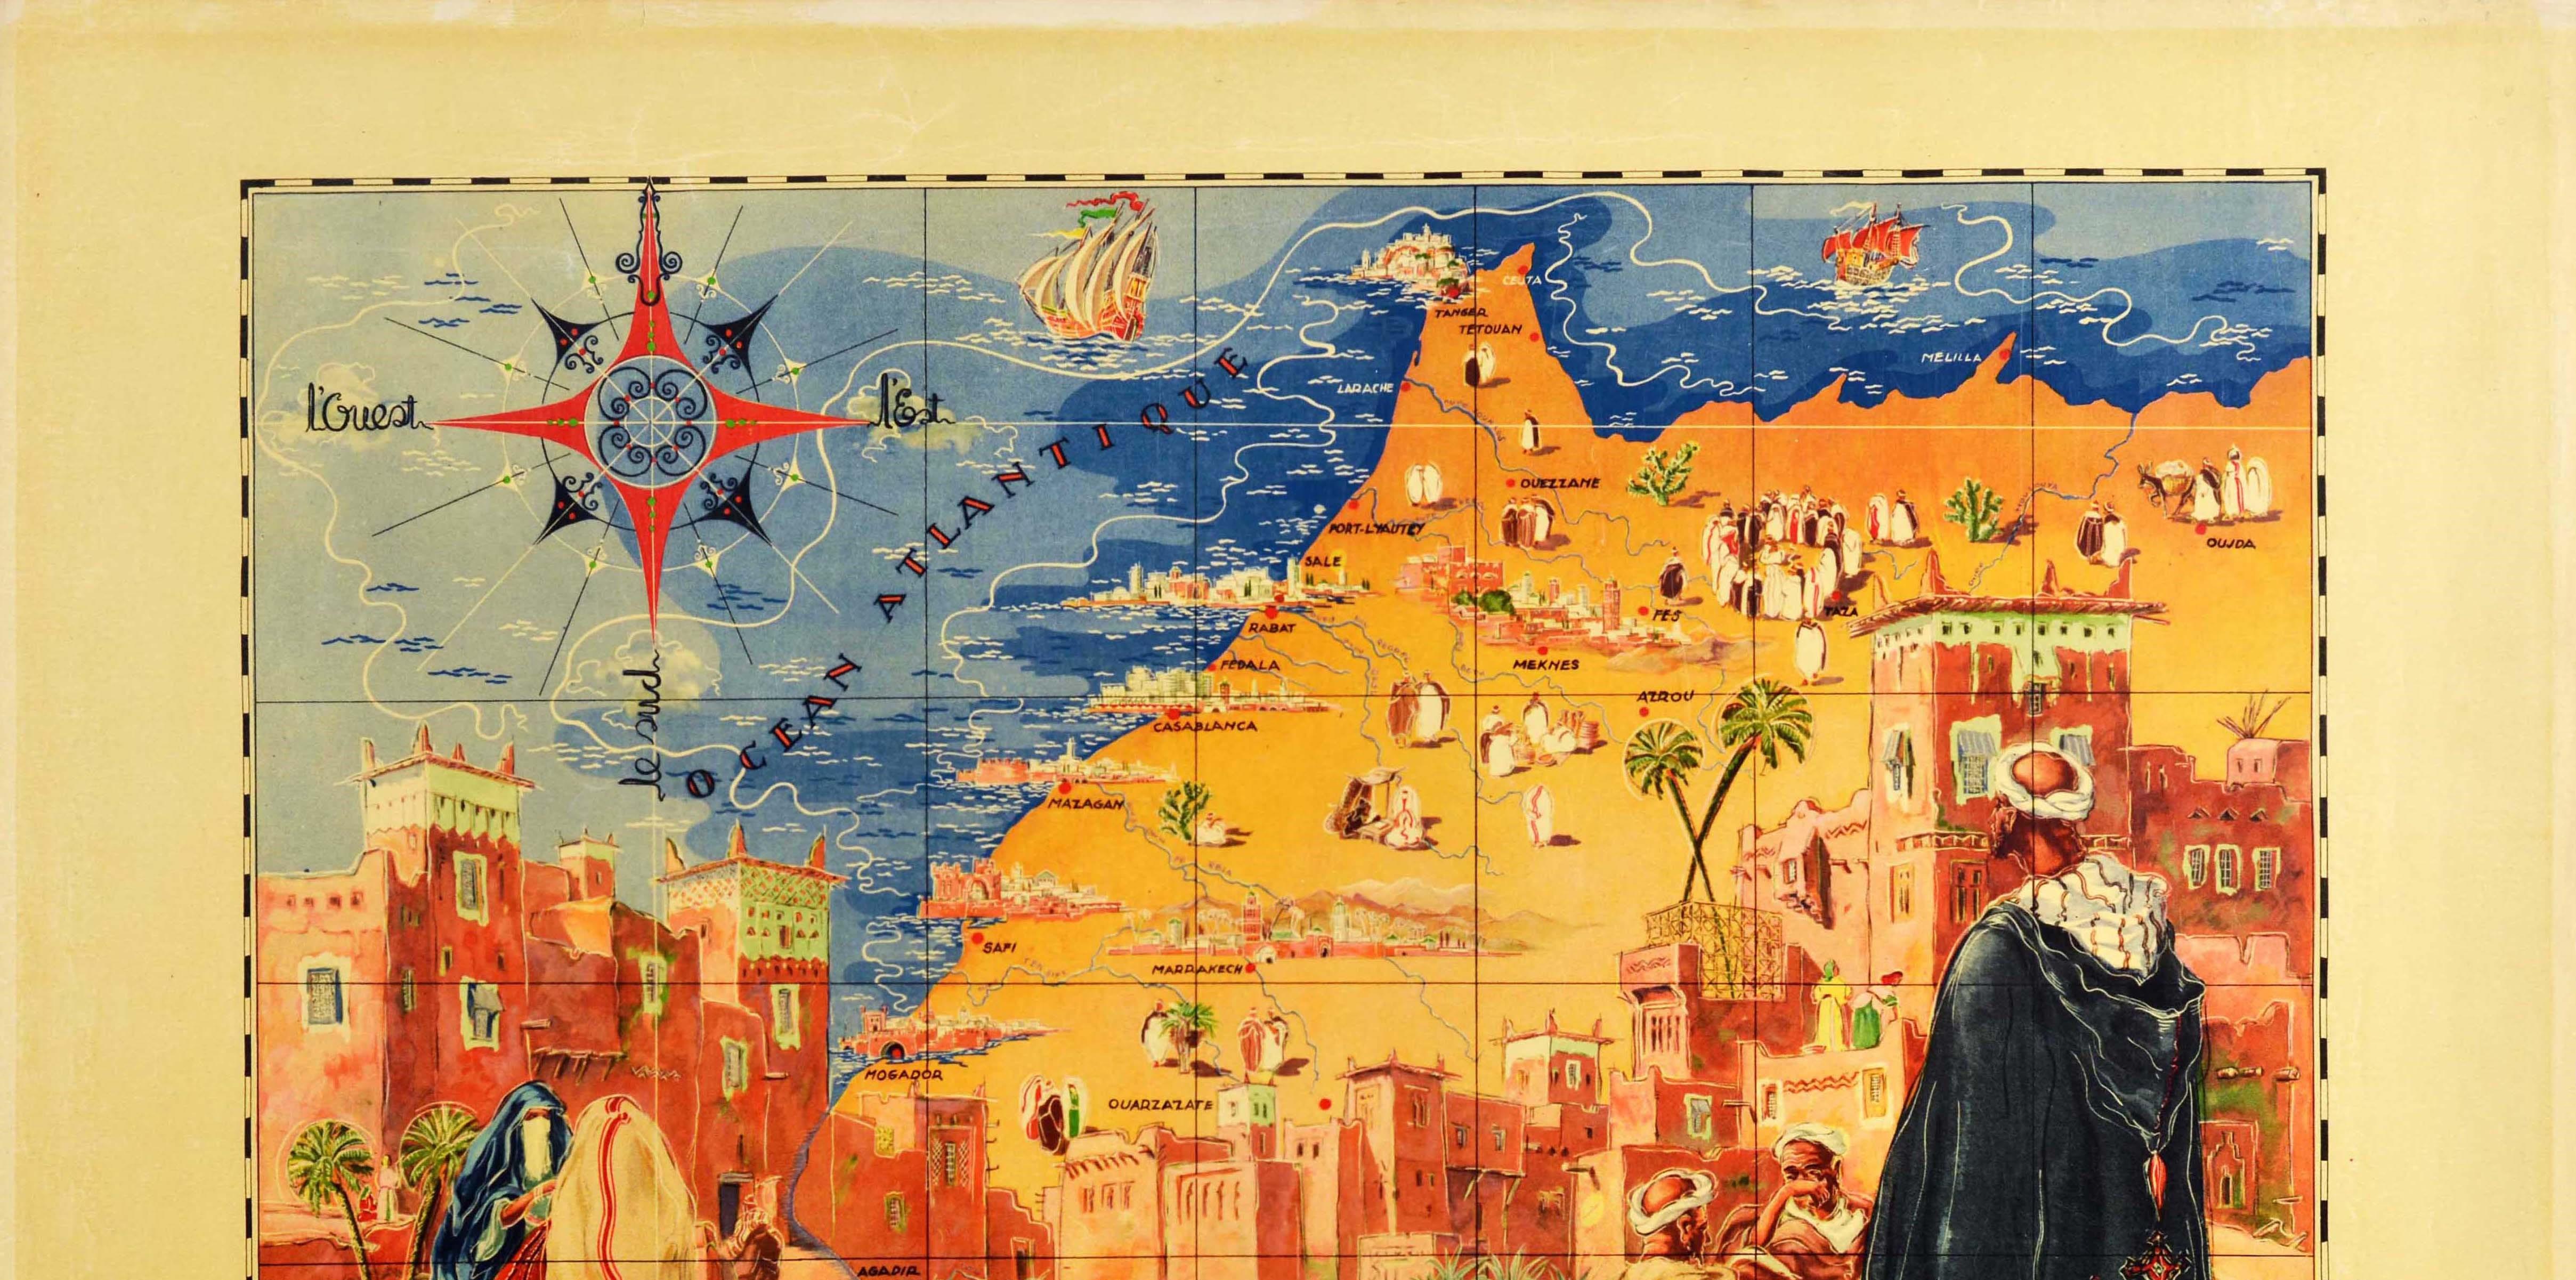 Moroccan Original Vintage Map Poster Morocco Maroc Regne Sidi Mohamed Ben Yousef Sultan